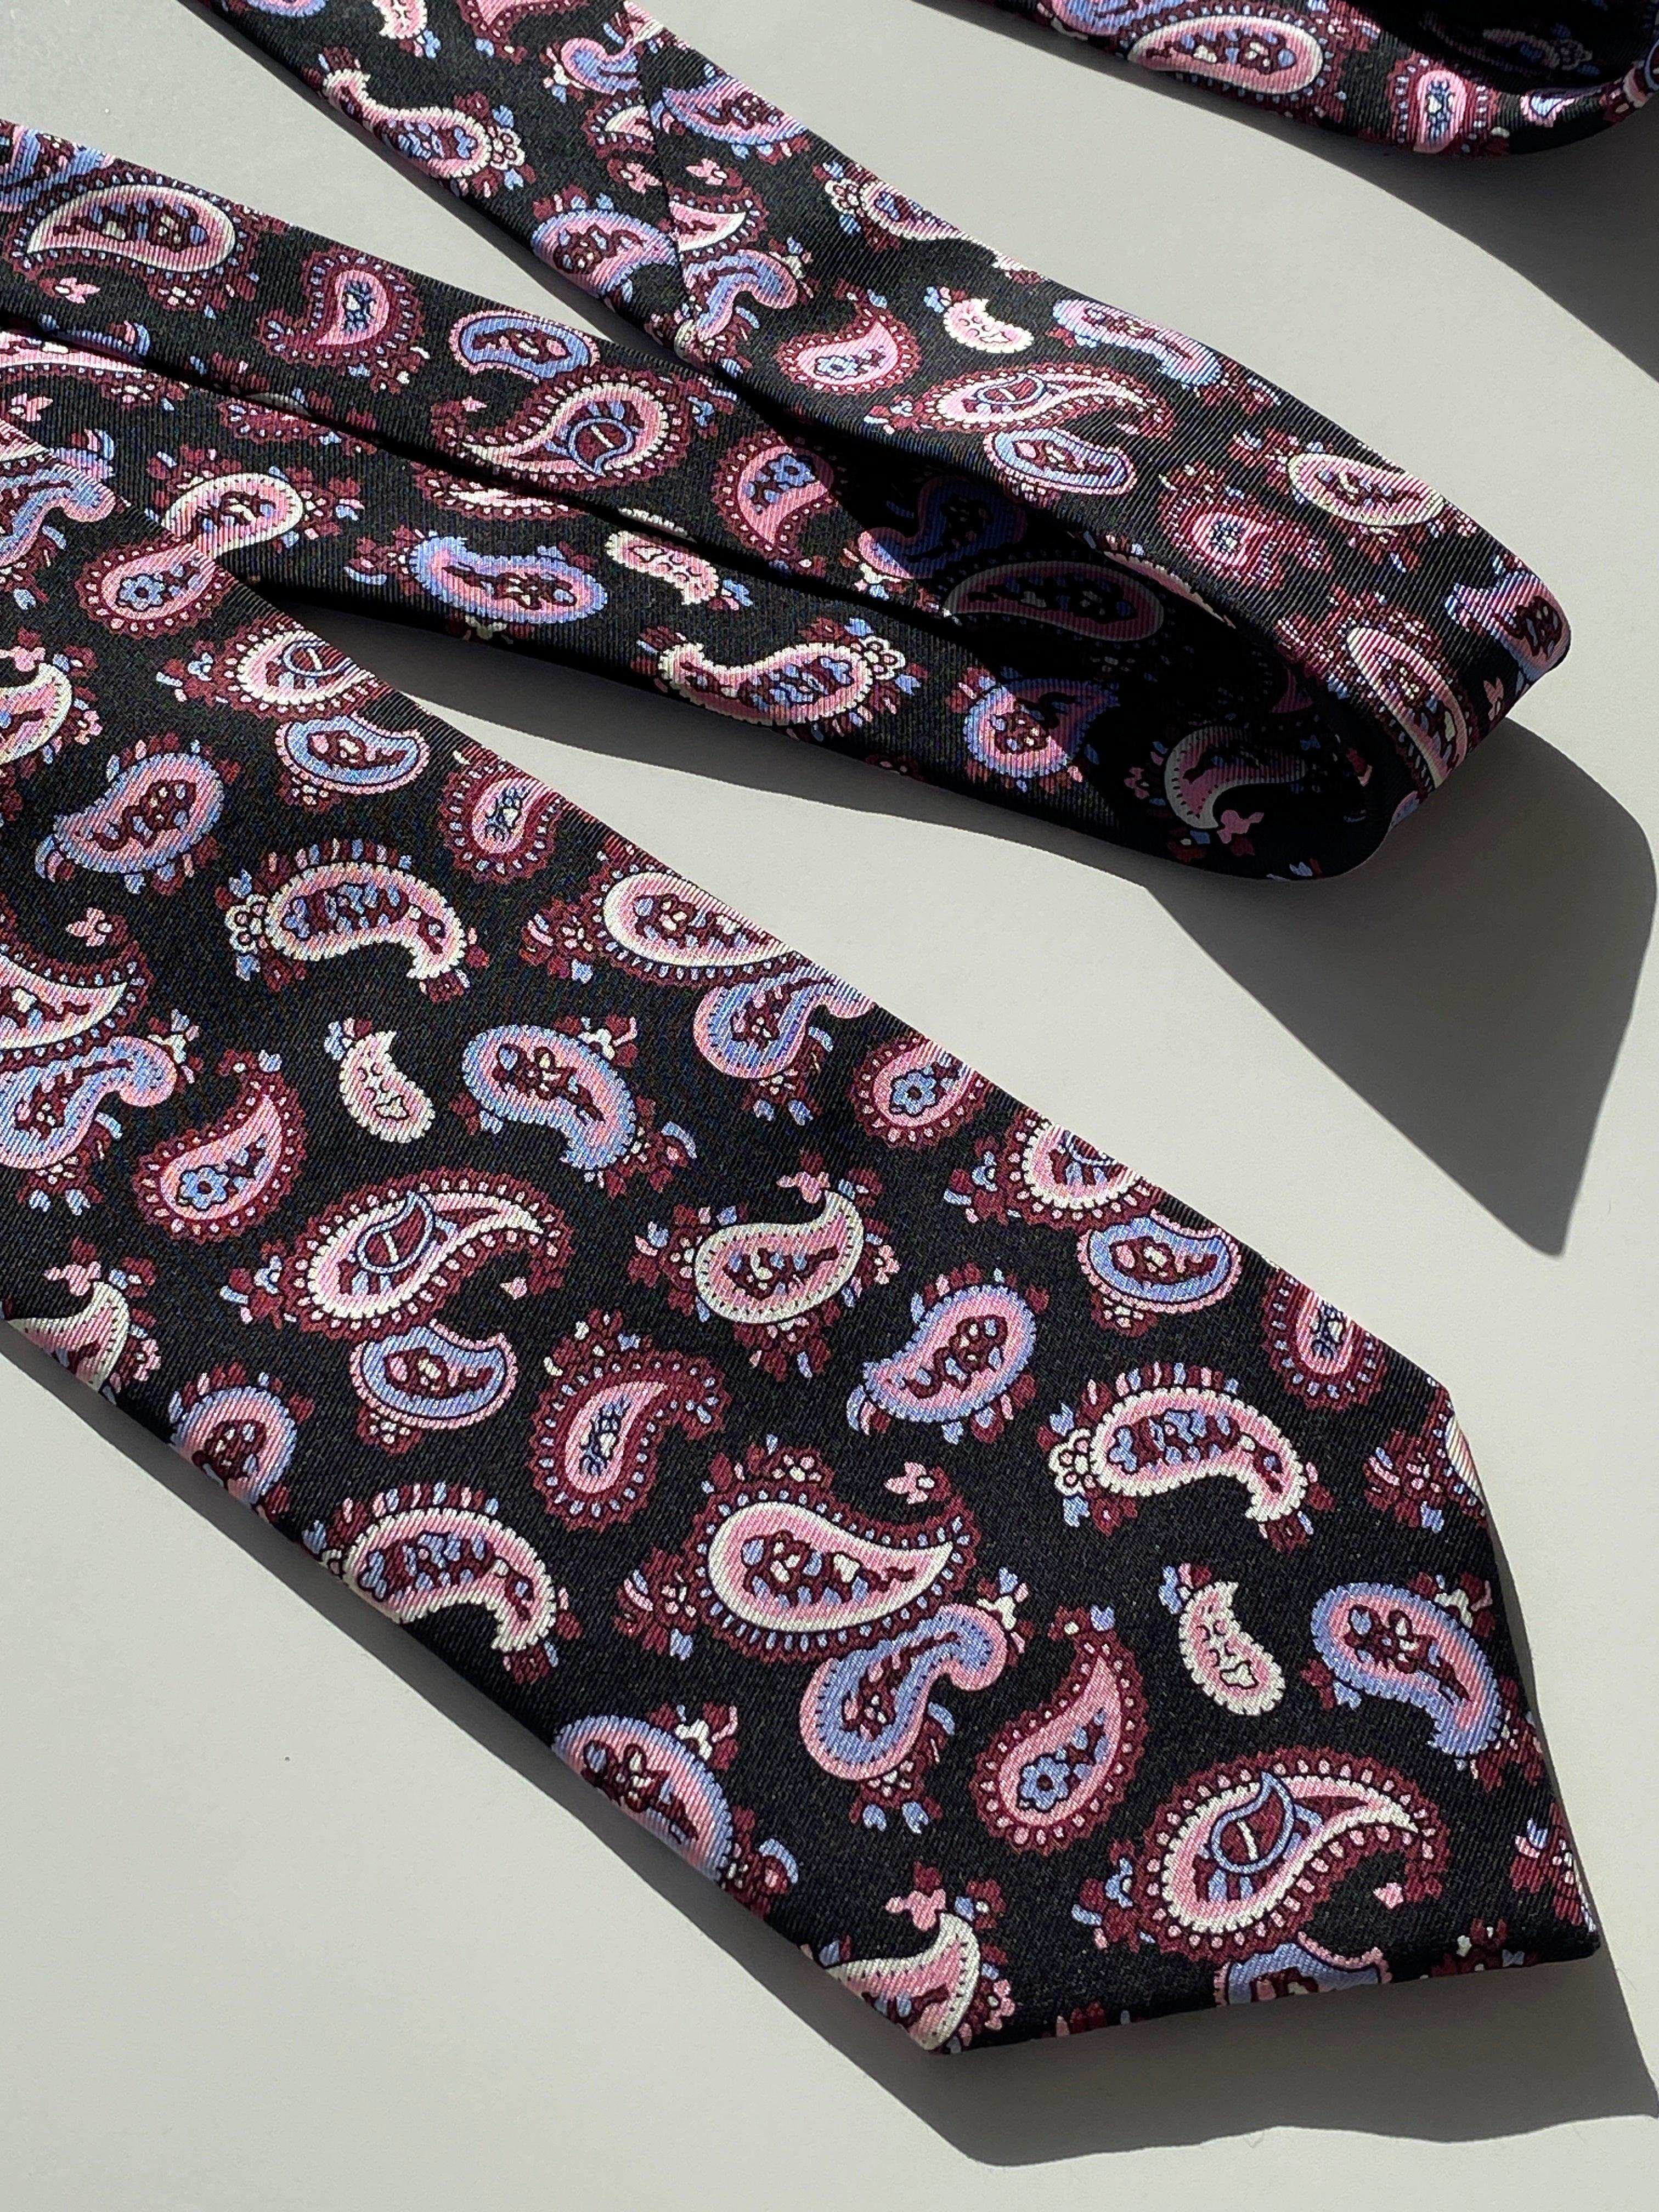 Vintage Paul Kehl Printed Silk Tie - Balagan Vintage Ties 80s, 90s, graphic ties, NEW IN, printed ties, tie, vintage ties